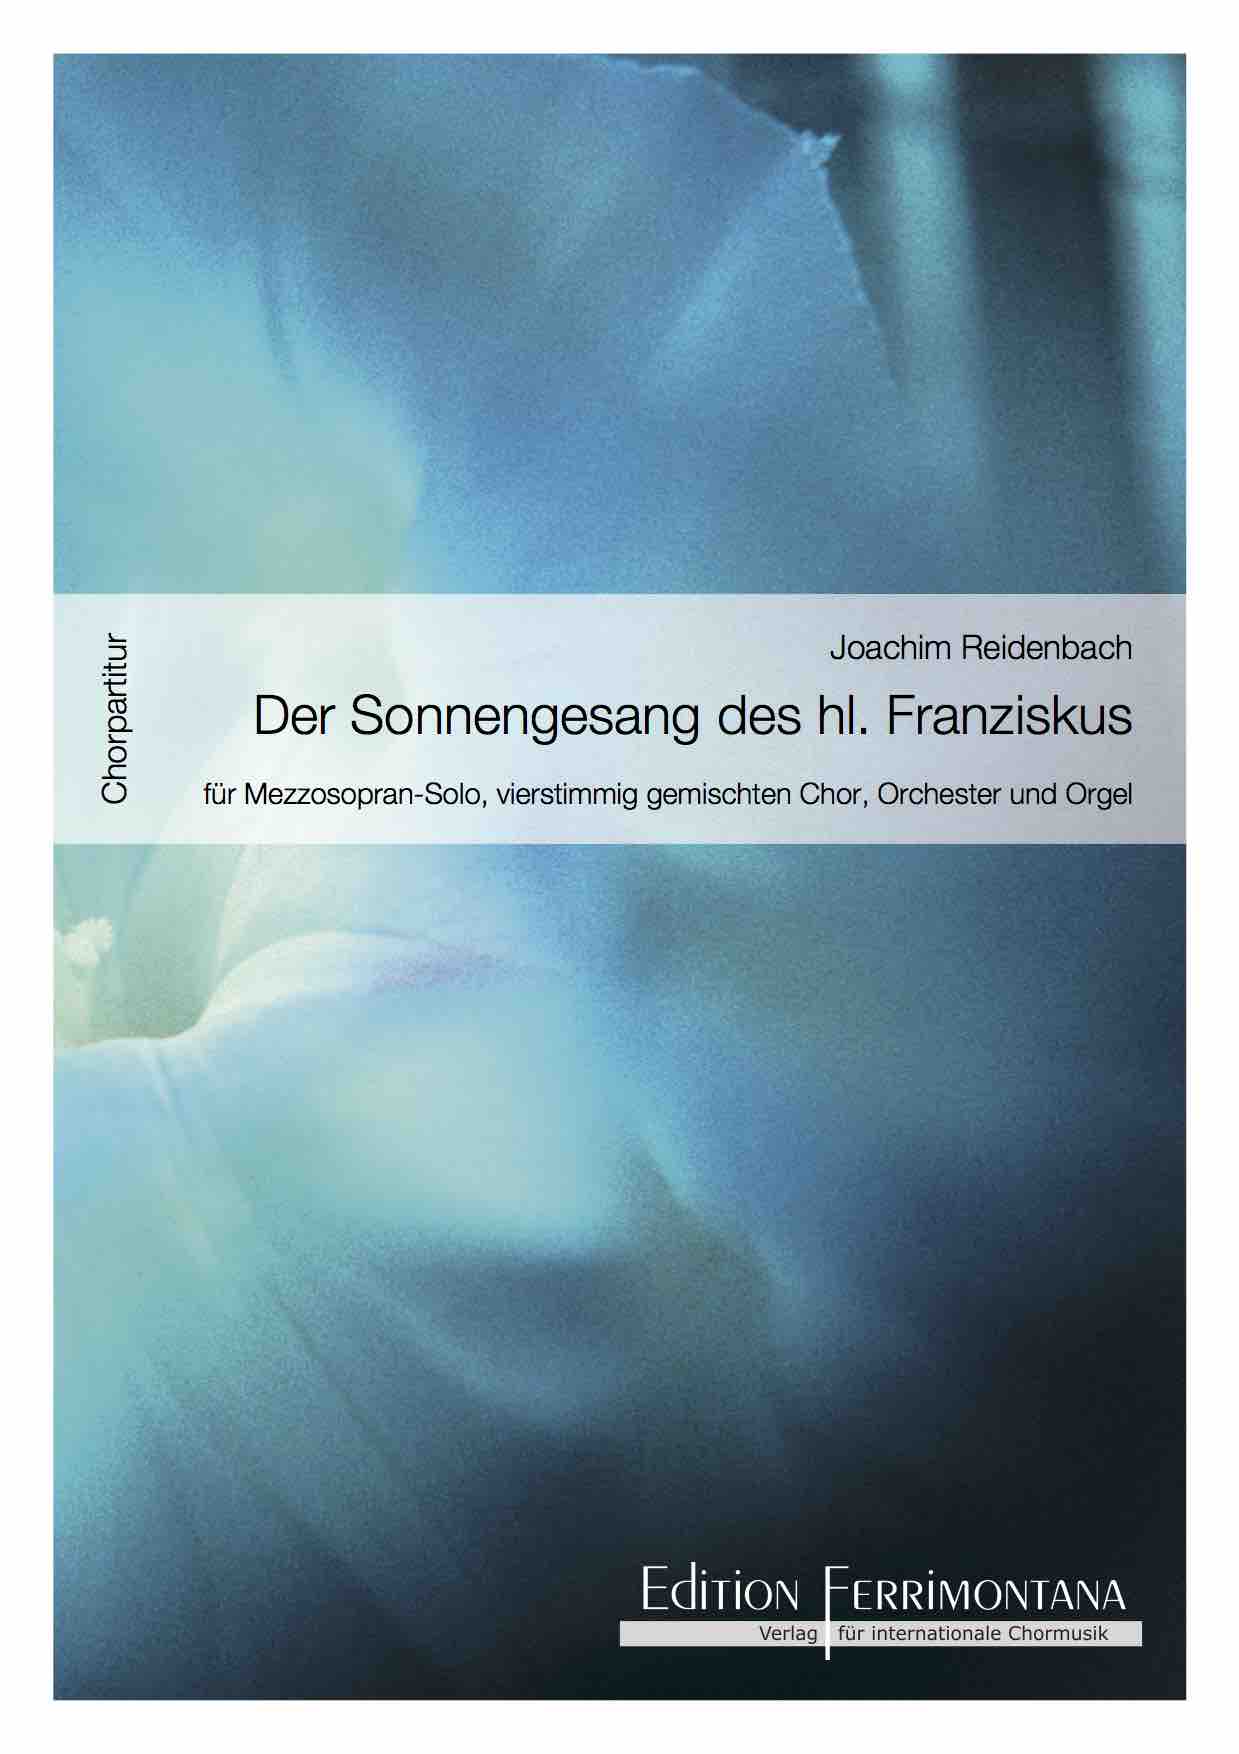 Reidenbach: Der Sonnengesang des heiligen Franziskus, für Mezzosopran solo, vierstimmig gemischten Chor / Orchester und Orgel - Chorpartitur